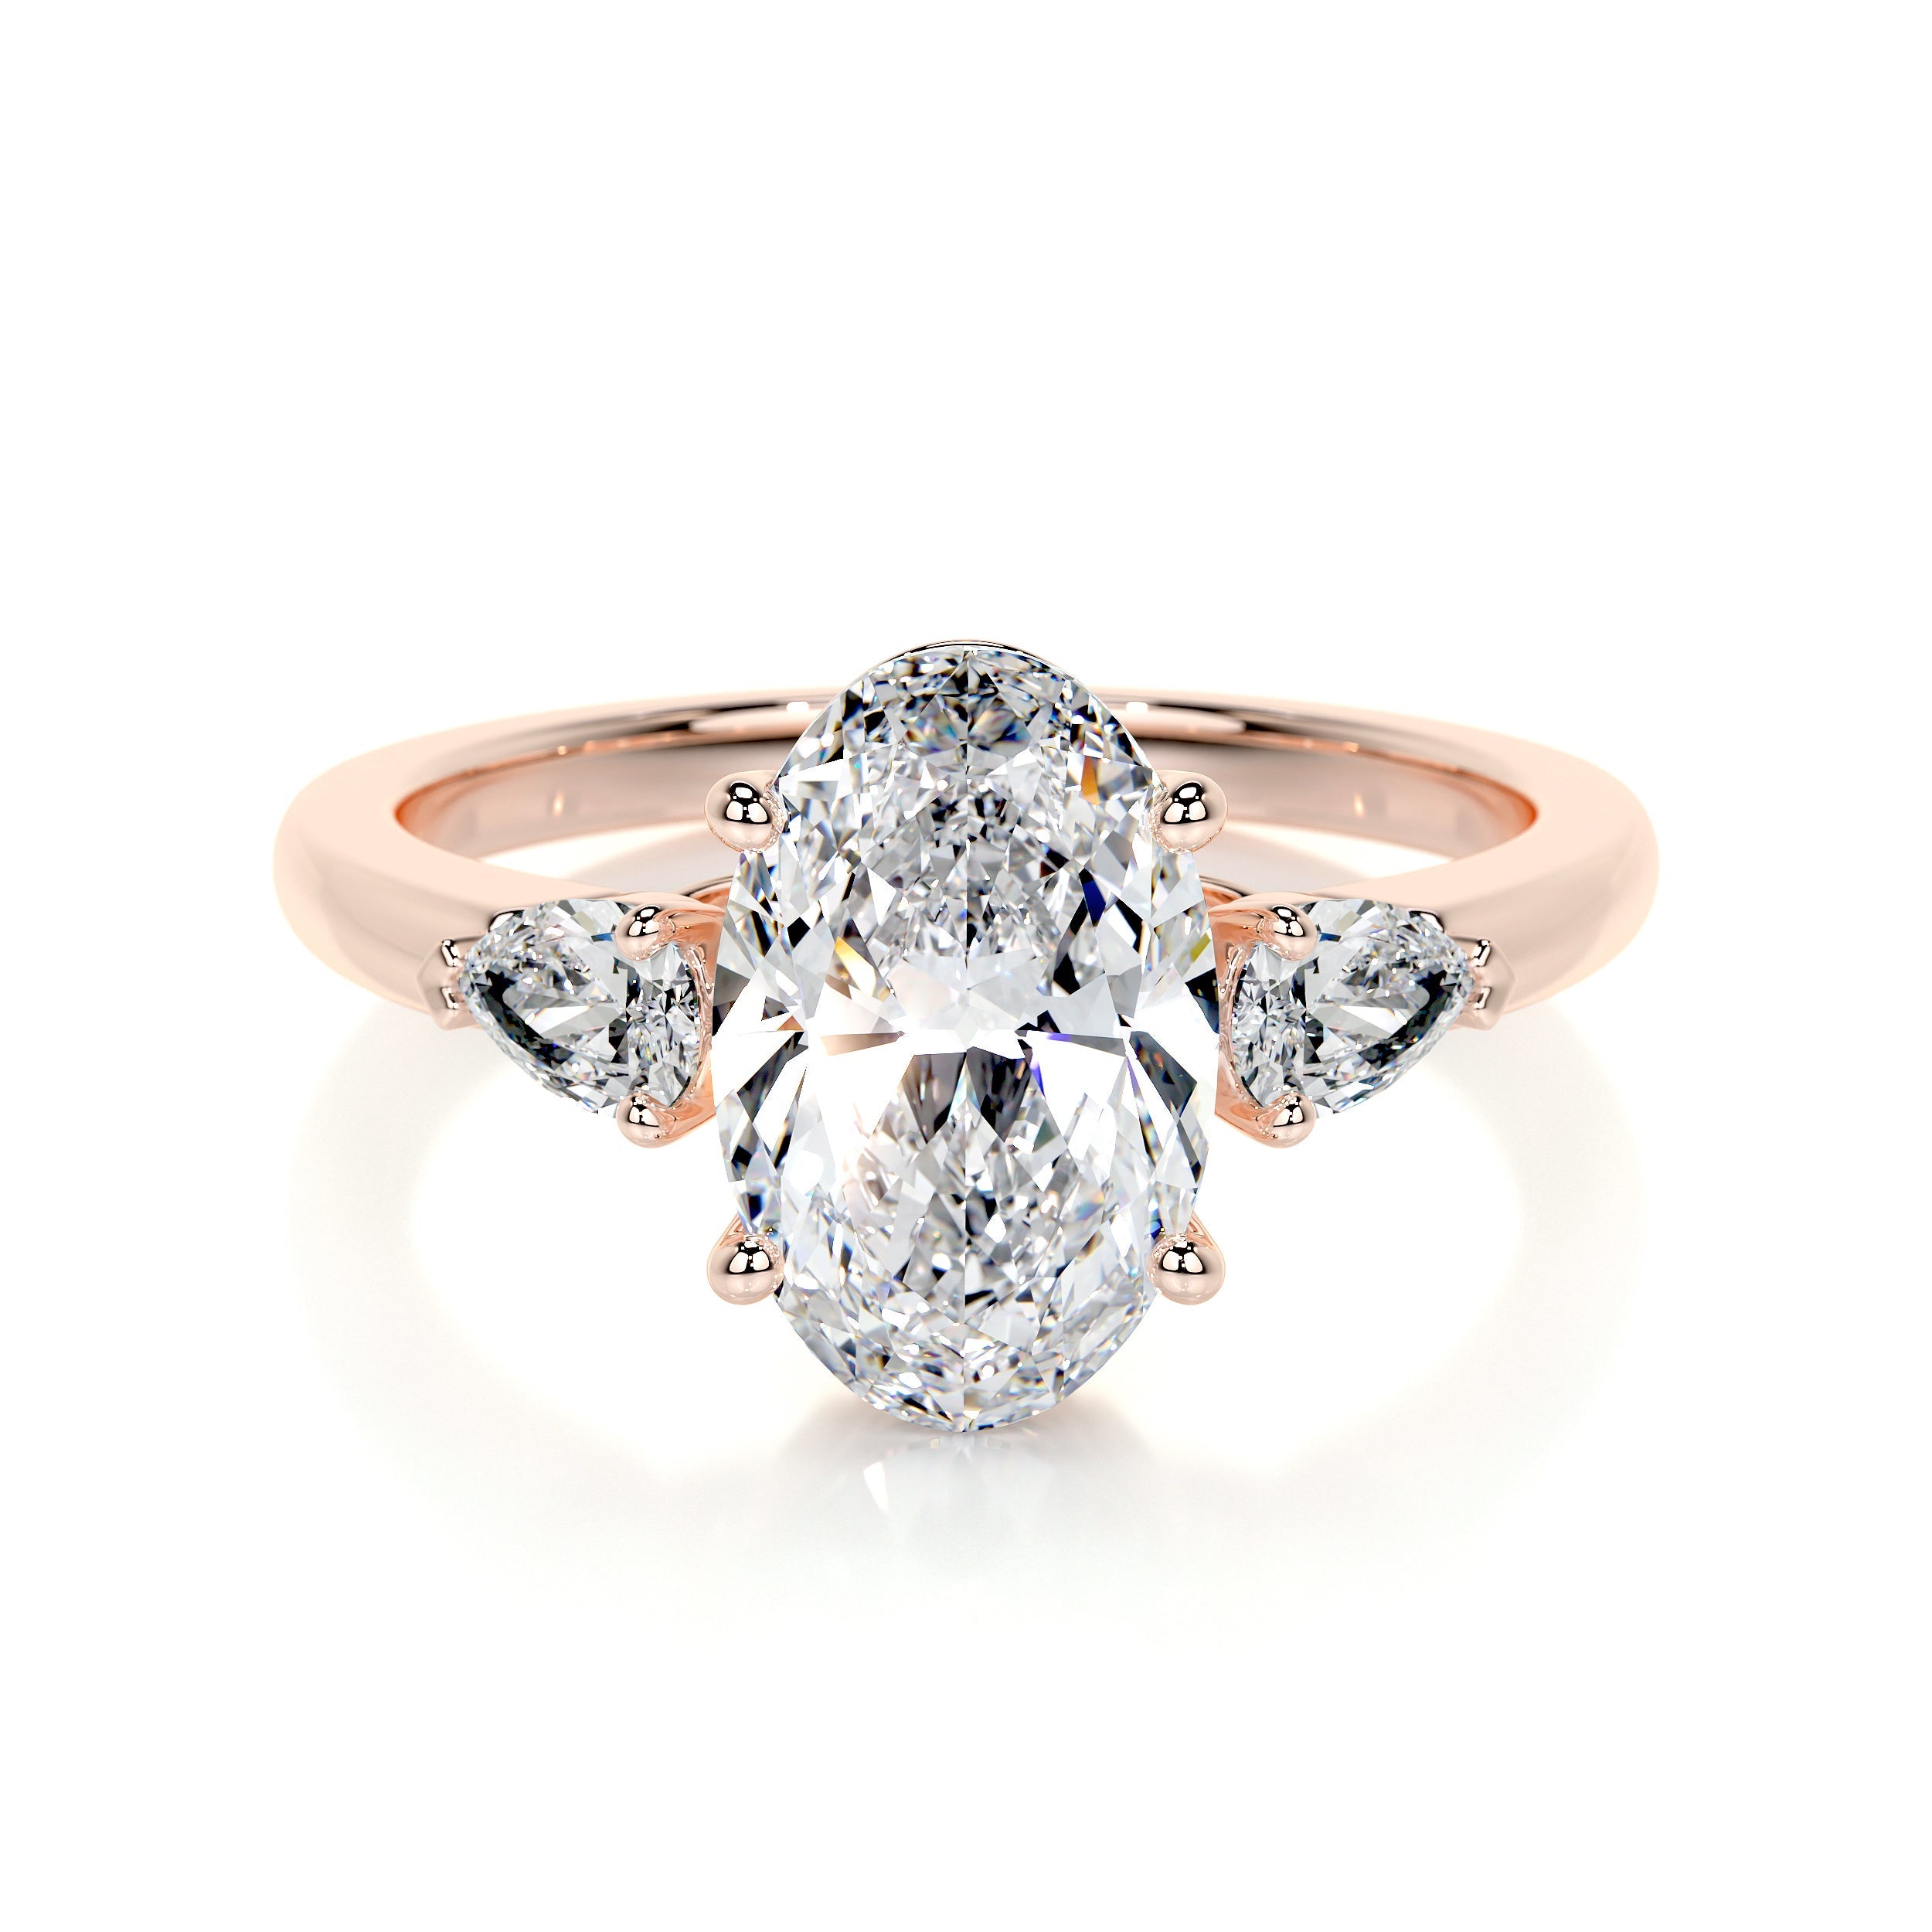 Kamala Lab Grown Diamond Ring   (3.3 Carat) -14K Rose Gold